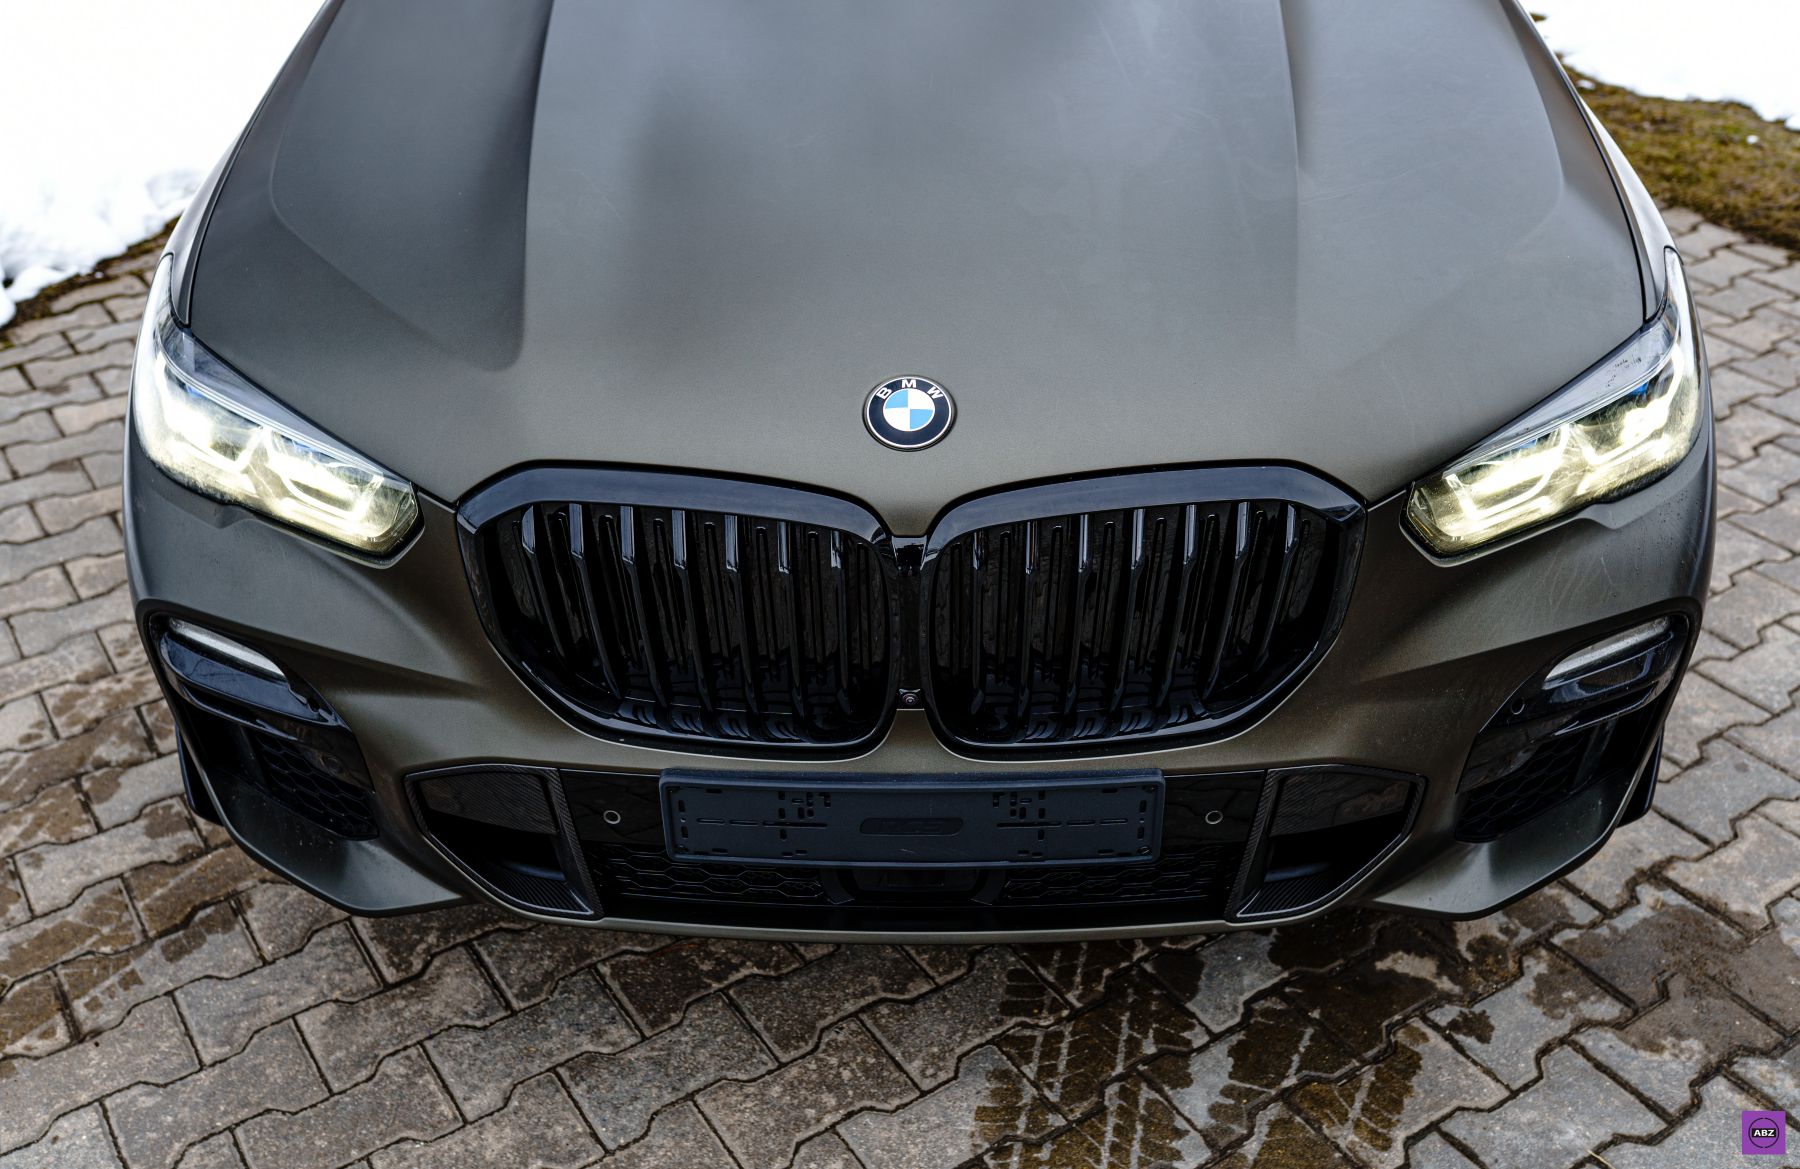 Фото BMW X5 Manhattan Metallic в глянце или матовый стайлинг?